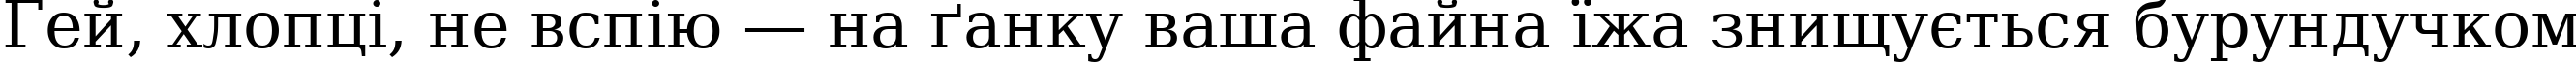 Пример написания шрифтом DejaVu Serif текста на украинском